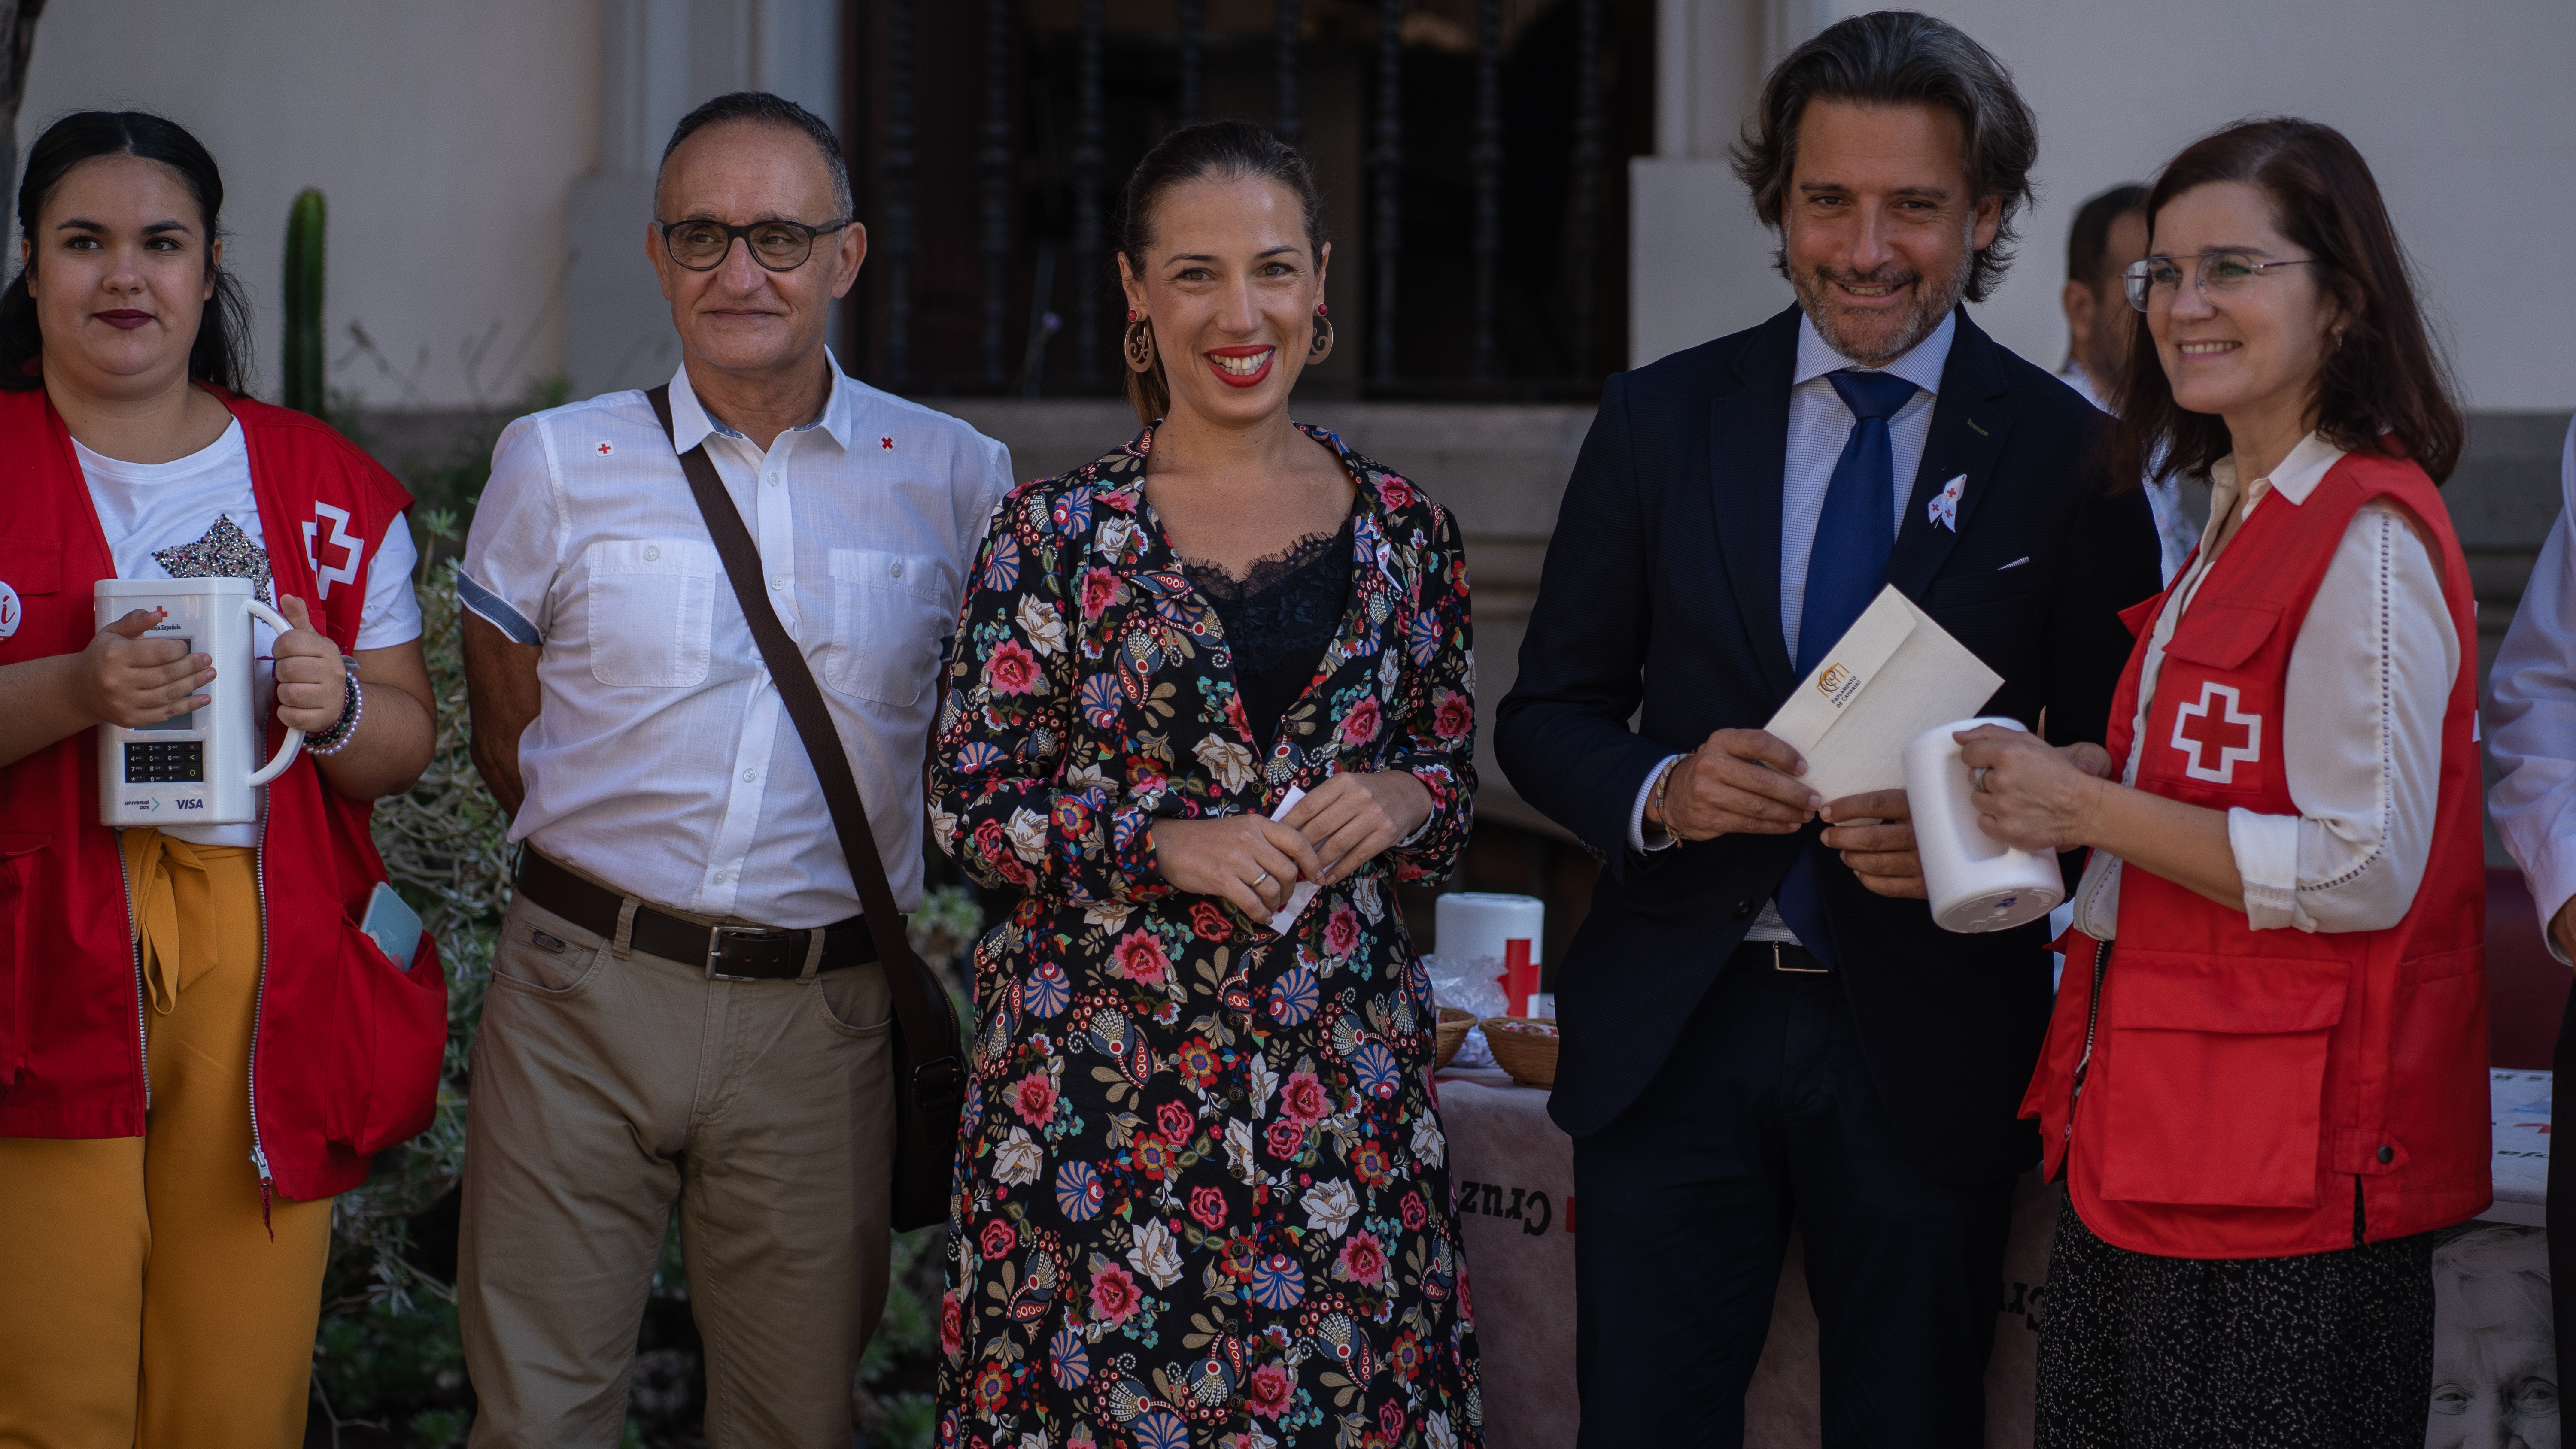 El presidente del Parlamento de Canarias acompañado de la alcaldesa de Santa Cruz de Tenerife haciendo entrega de la donación a Cruz Roja